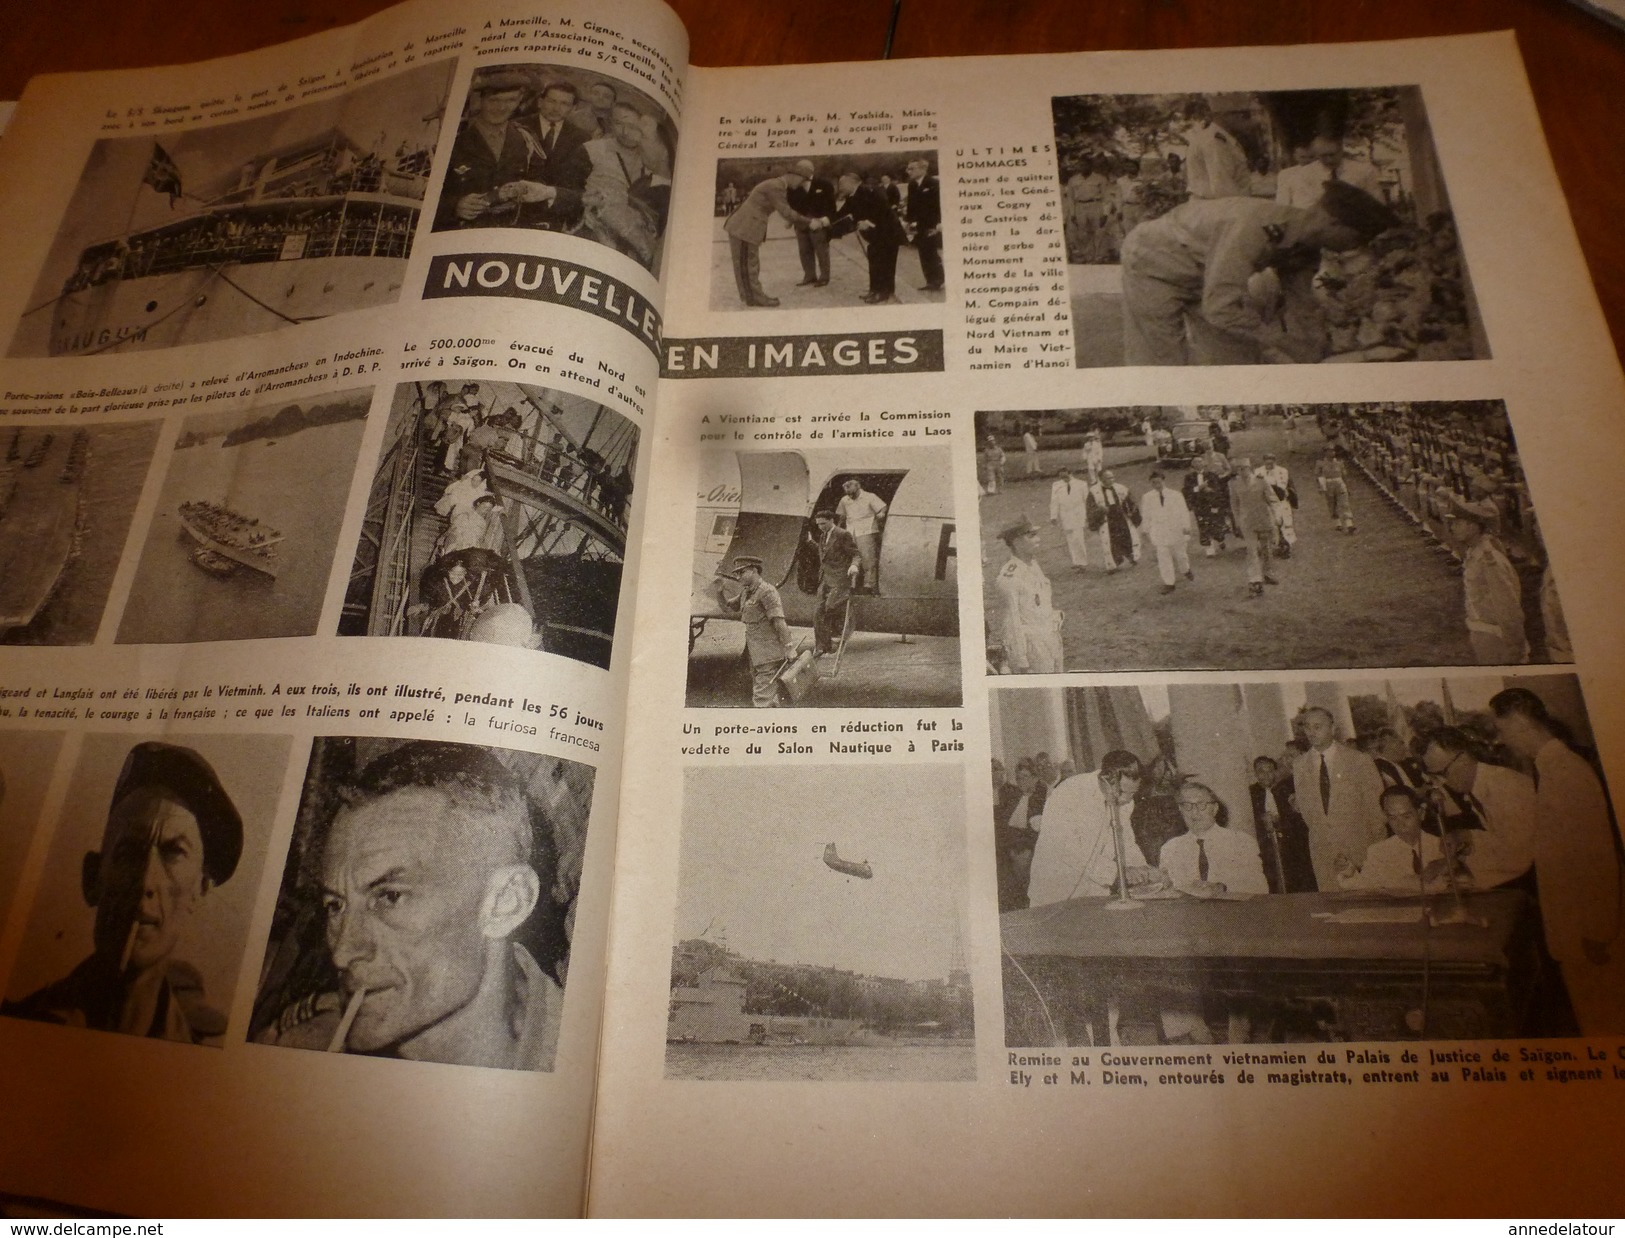 1954 LE COMBATTANT D'INDOCHINE: Hanoï; Bigeard et Langlais libérés par le Vietminh; Ho Chi Minh; Jacques Duclos; etc